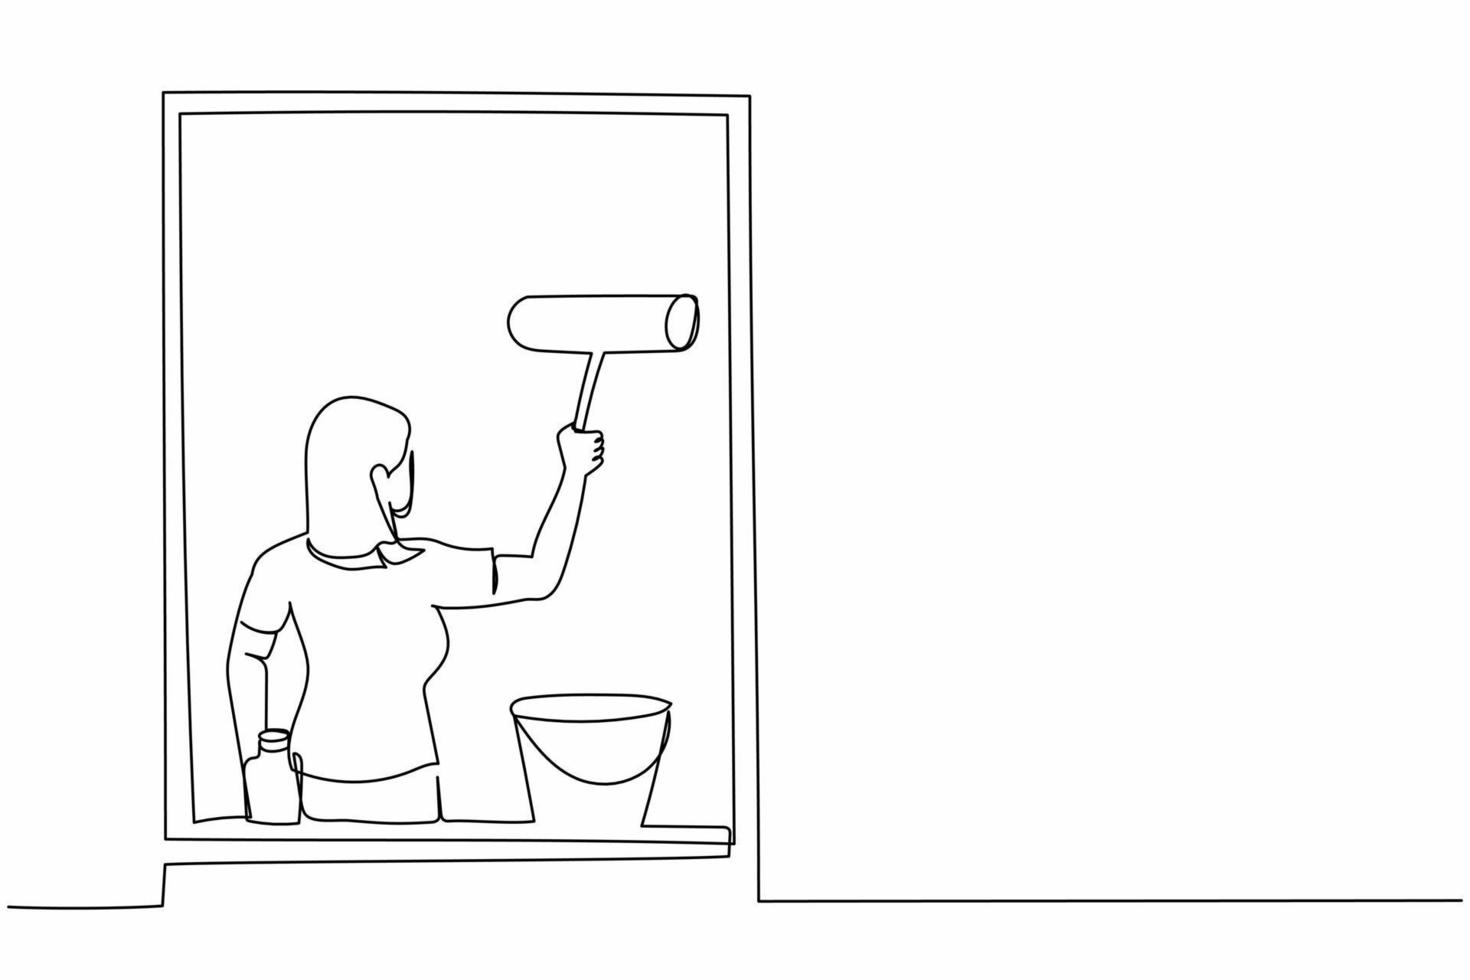 single doorlopend lijn tekening jong vrouw schoonmaak ramen met glas schoonmaakster hulpmiddelen. het wassen ramen met emmer, wasmiddel, nat vod. dagelijks huiswerk. een lijn trek grafisch ontwerp vector illustratie